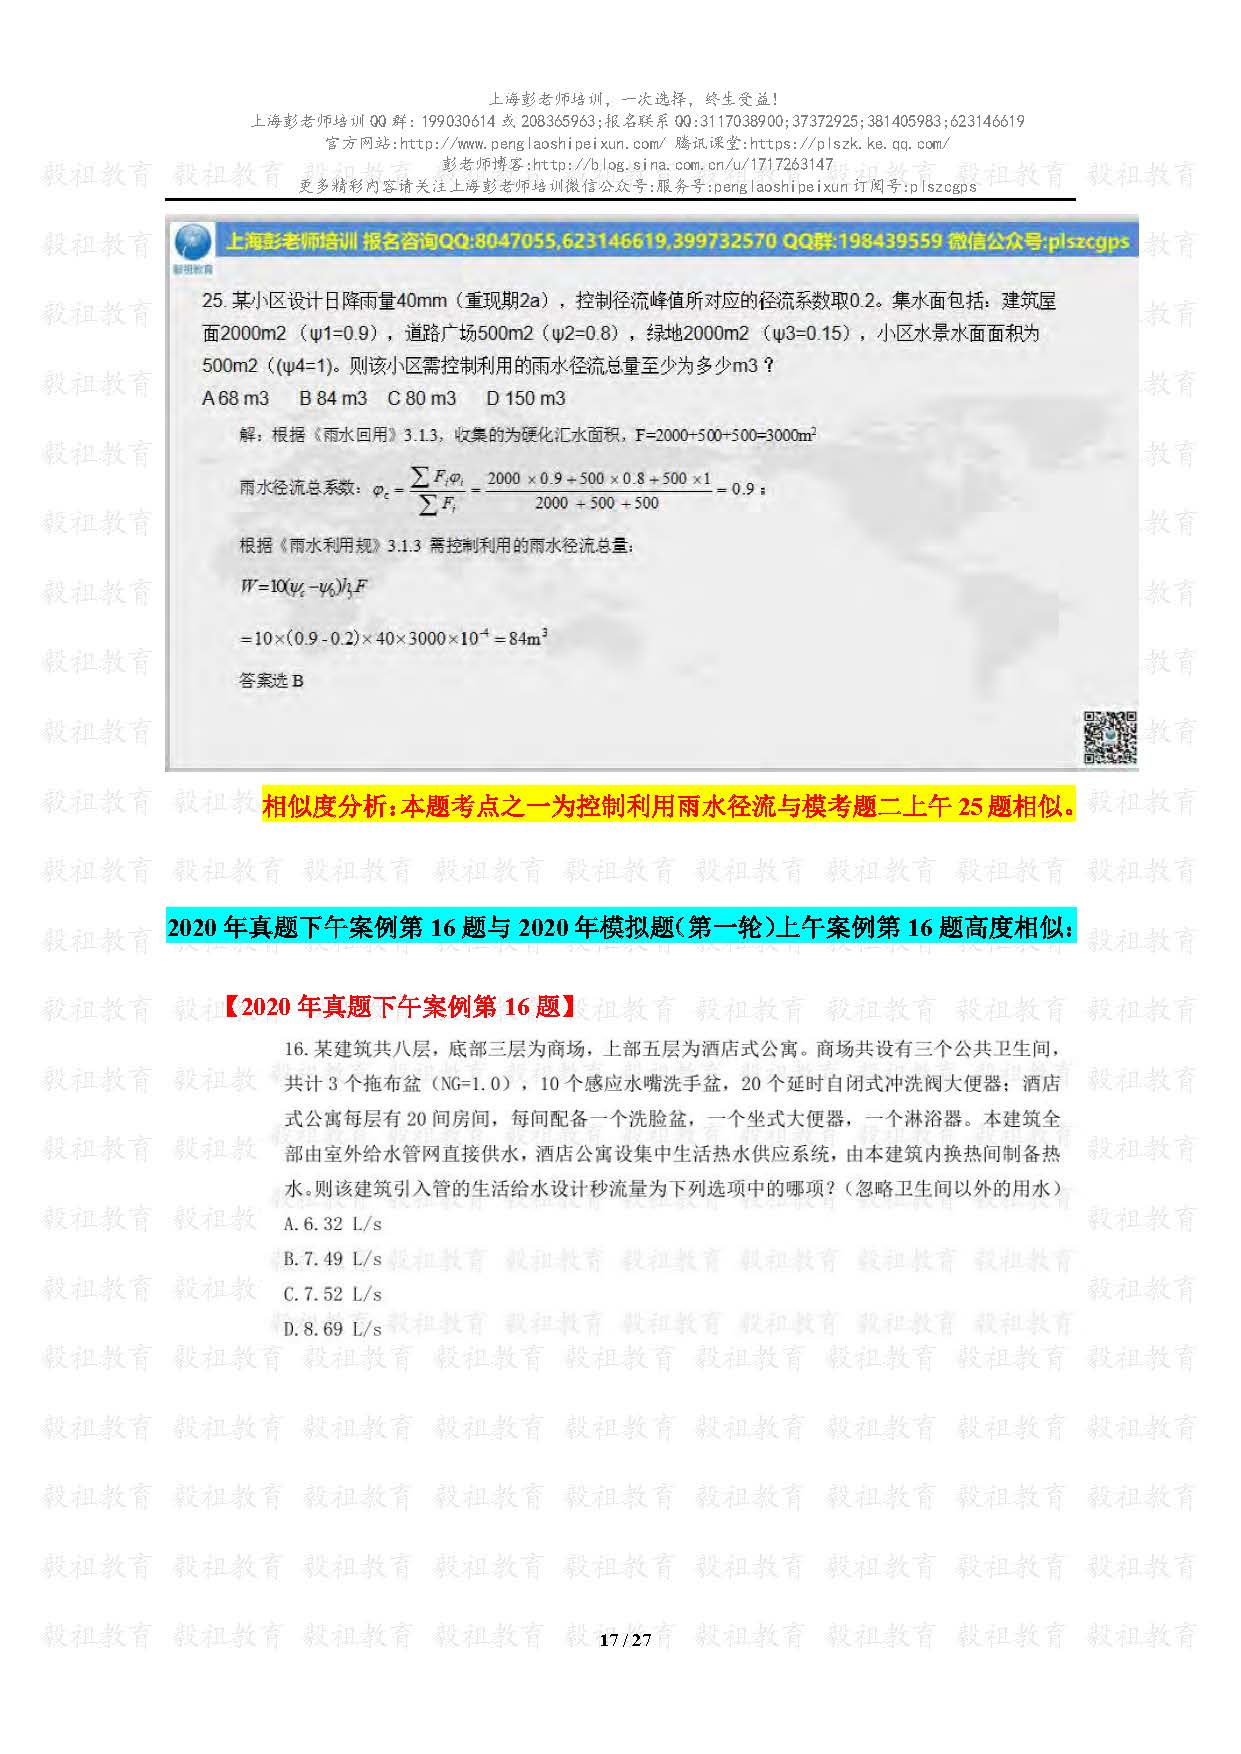 2020注册给排水考试真题与模考题相似度分析-上海彭老师培训_页面_17.jpg.jpg